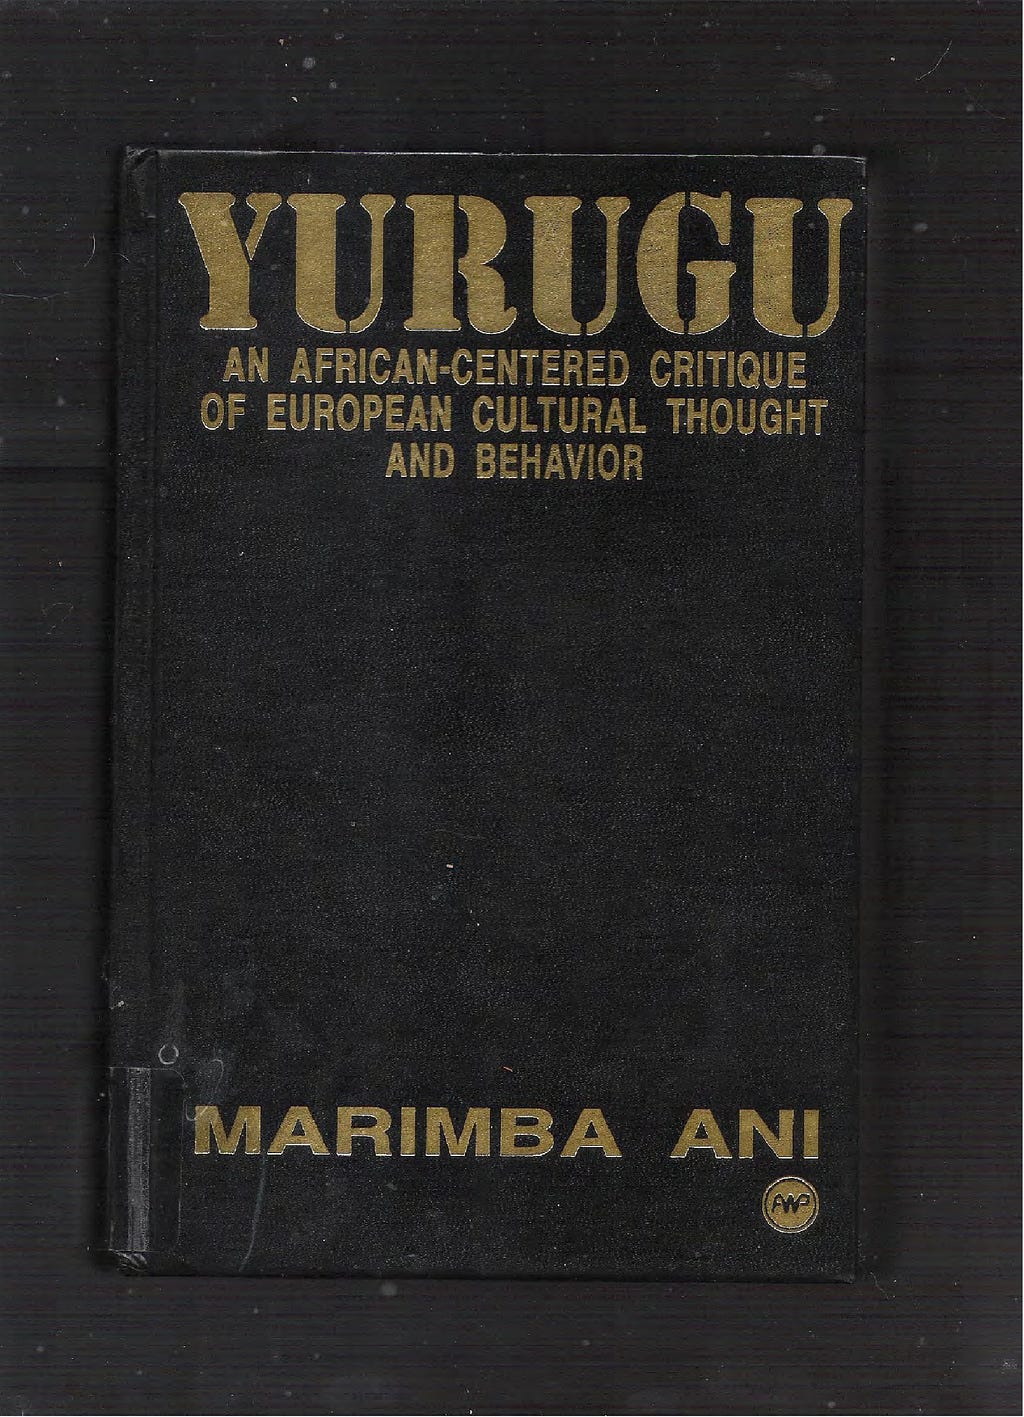 Livro de capa preta e letras douradas com o título “Yurugu”.